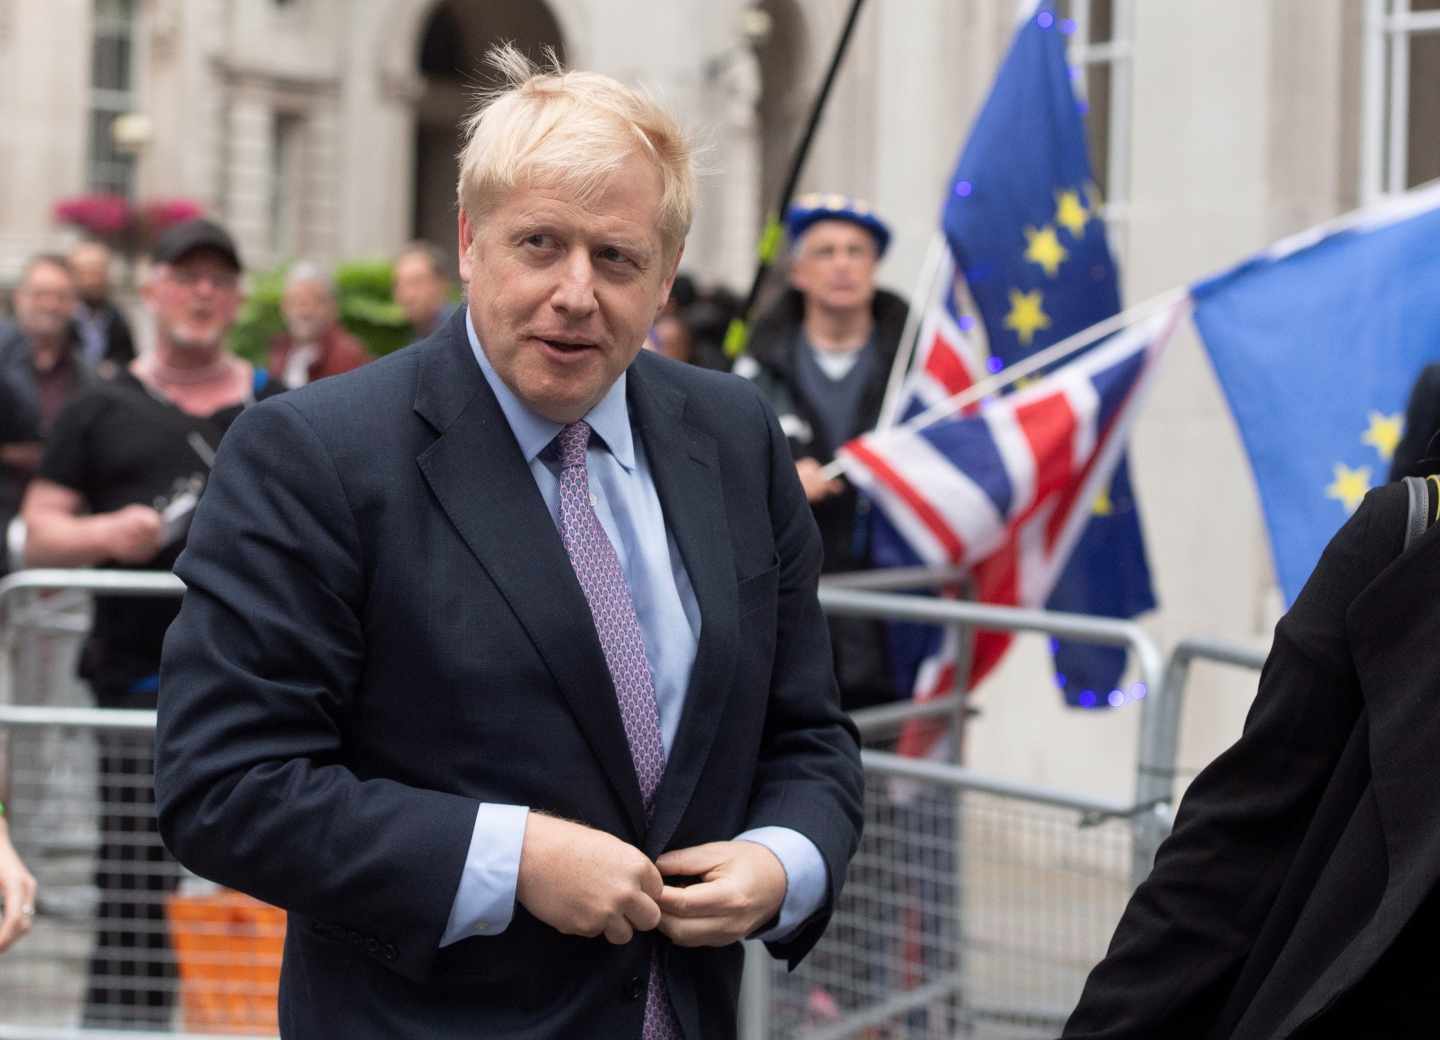 Boris Johnson es el favorito para suceder a Theresa May como líder conservador y primer ministro.